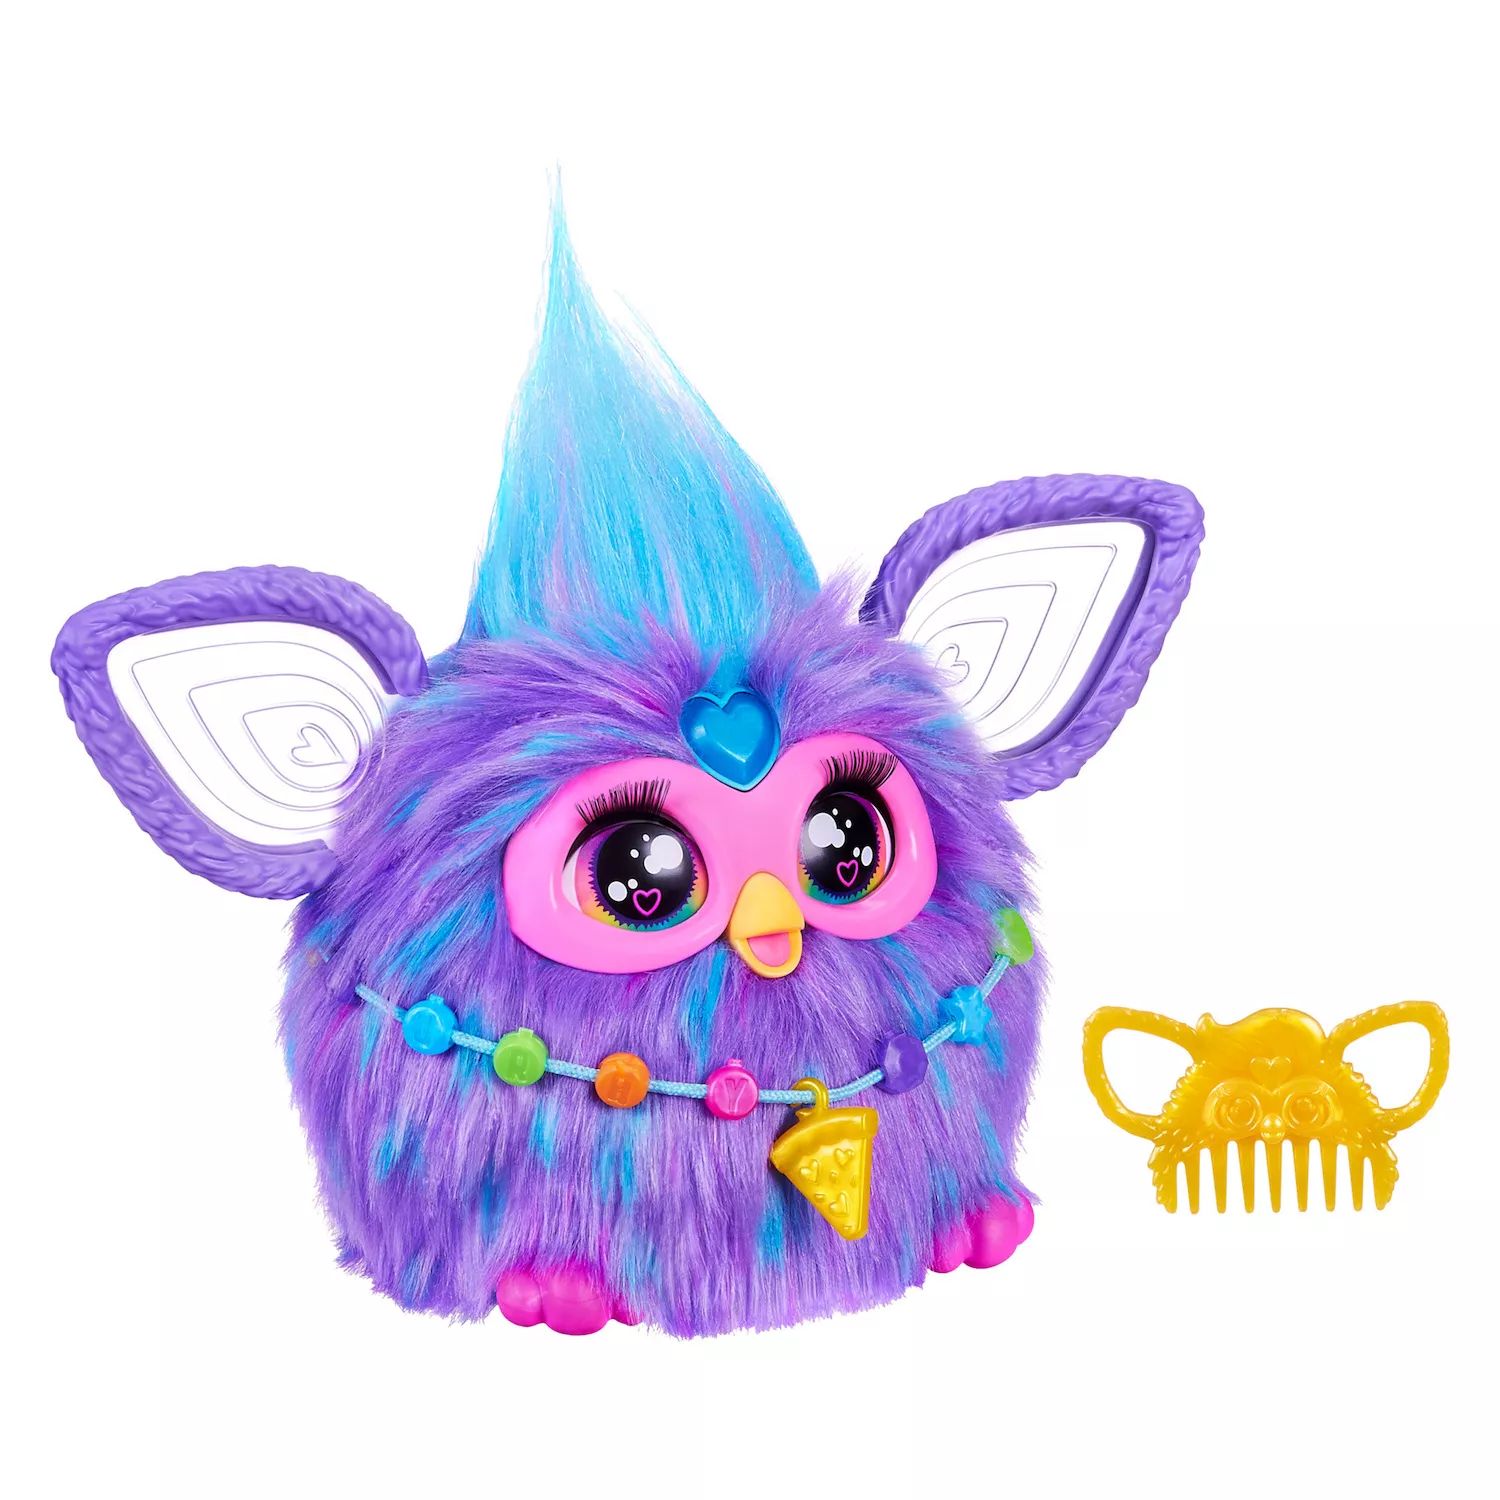 Интерактивная игрушка Hasbro Furby фиолетового цвета Hasbro hasbro yellies интерактивная игрушка ящерица 2 lizabelle 1 шт